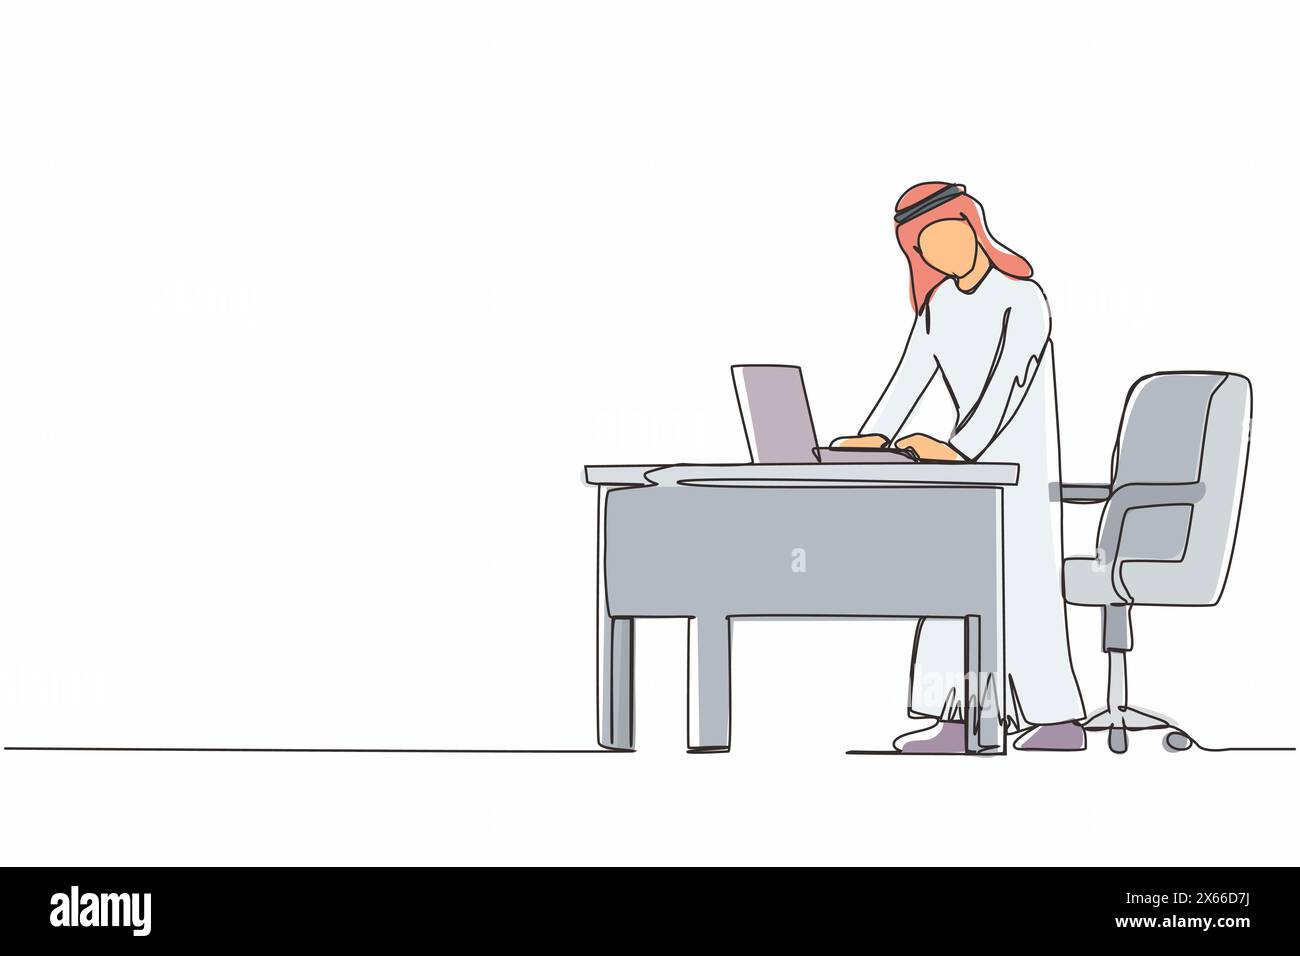 Durchgehende einzeilige Zeichnung arabischer Mann Mitarbeiter, der an ergonomischen Arbeitsplätzen arbeitet. Büromöbel mit Computer, Laptop. Mann auf Fußstütze stehend b Stock Vektor